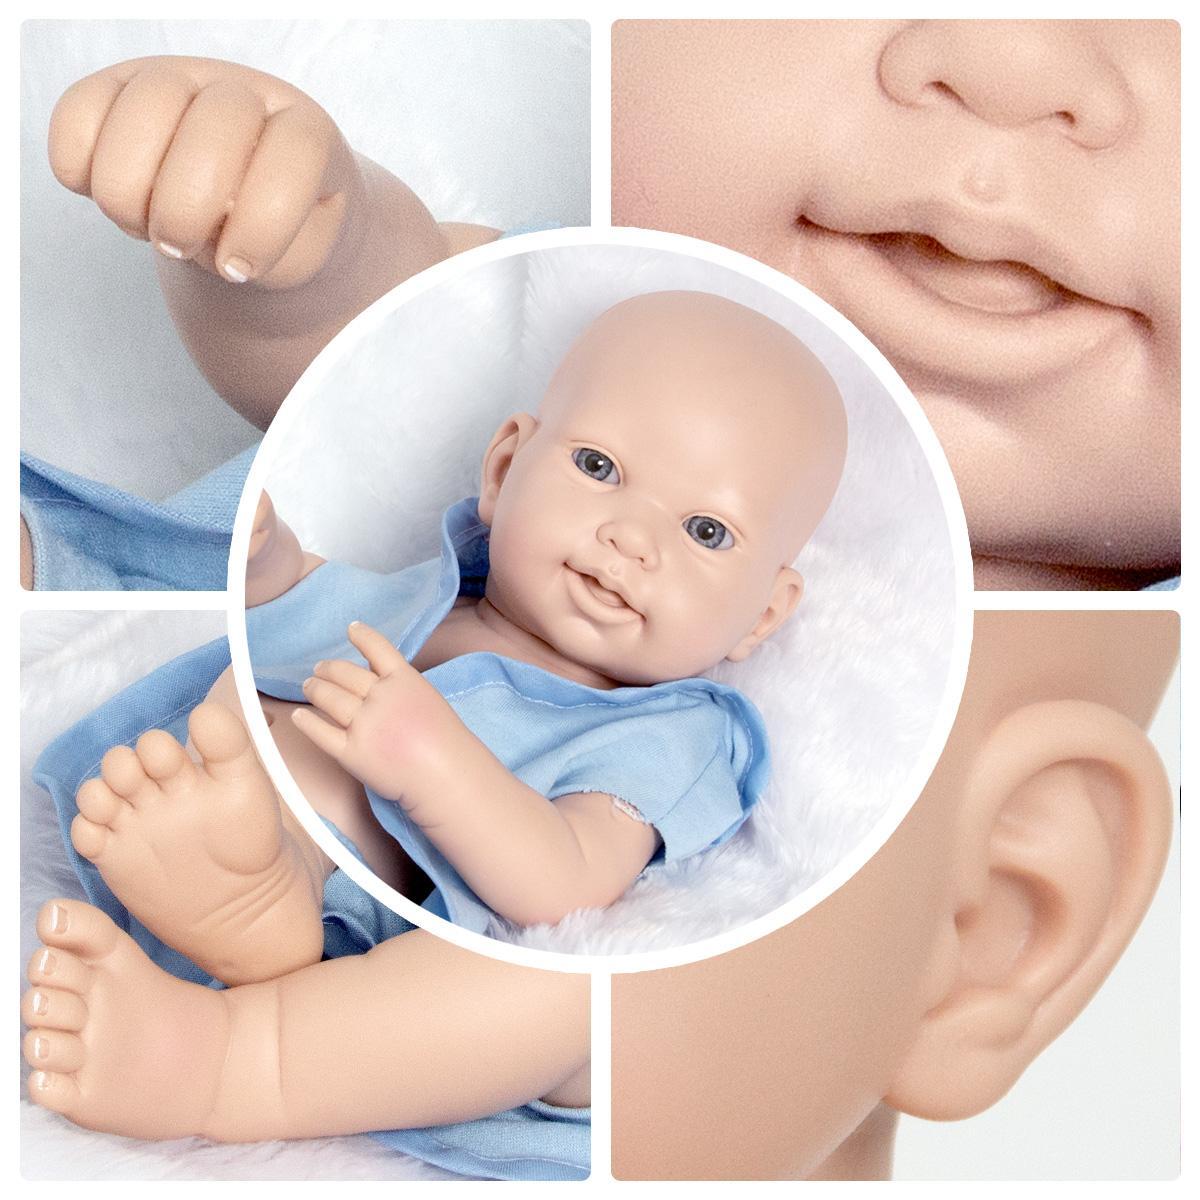 Boneca Bebe Reborn Realista Silicone Menino Caio 48cm - Malki toys